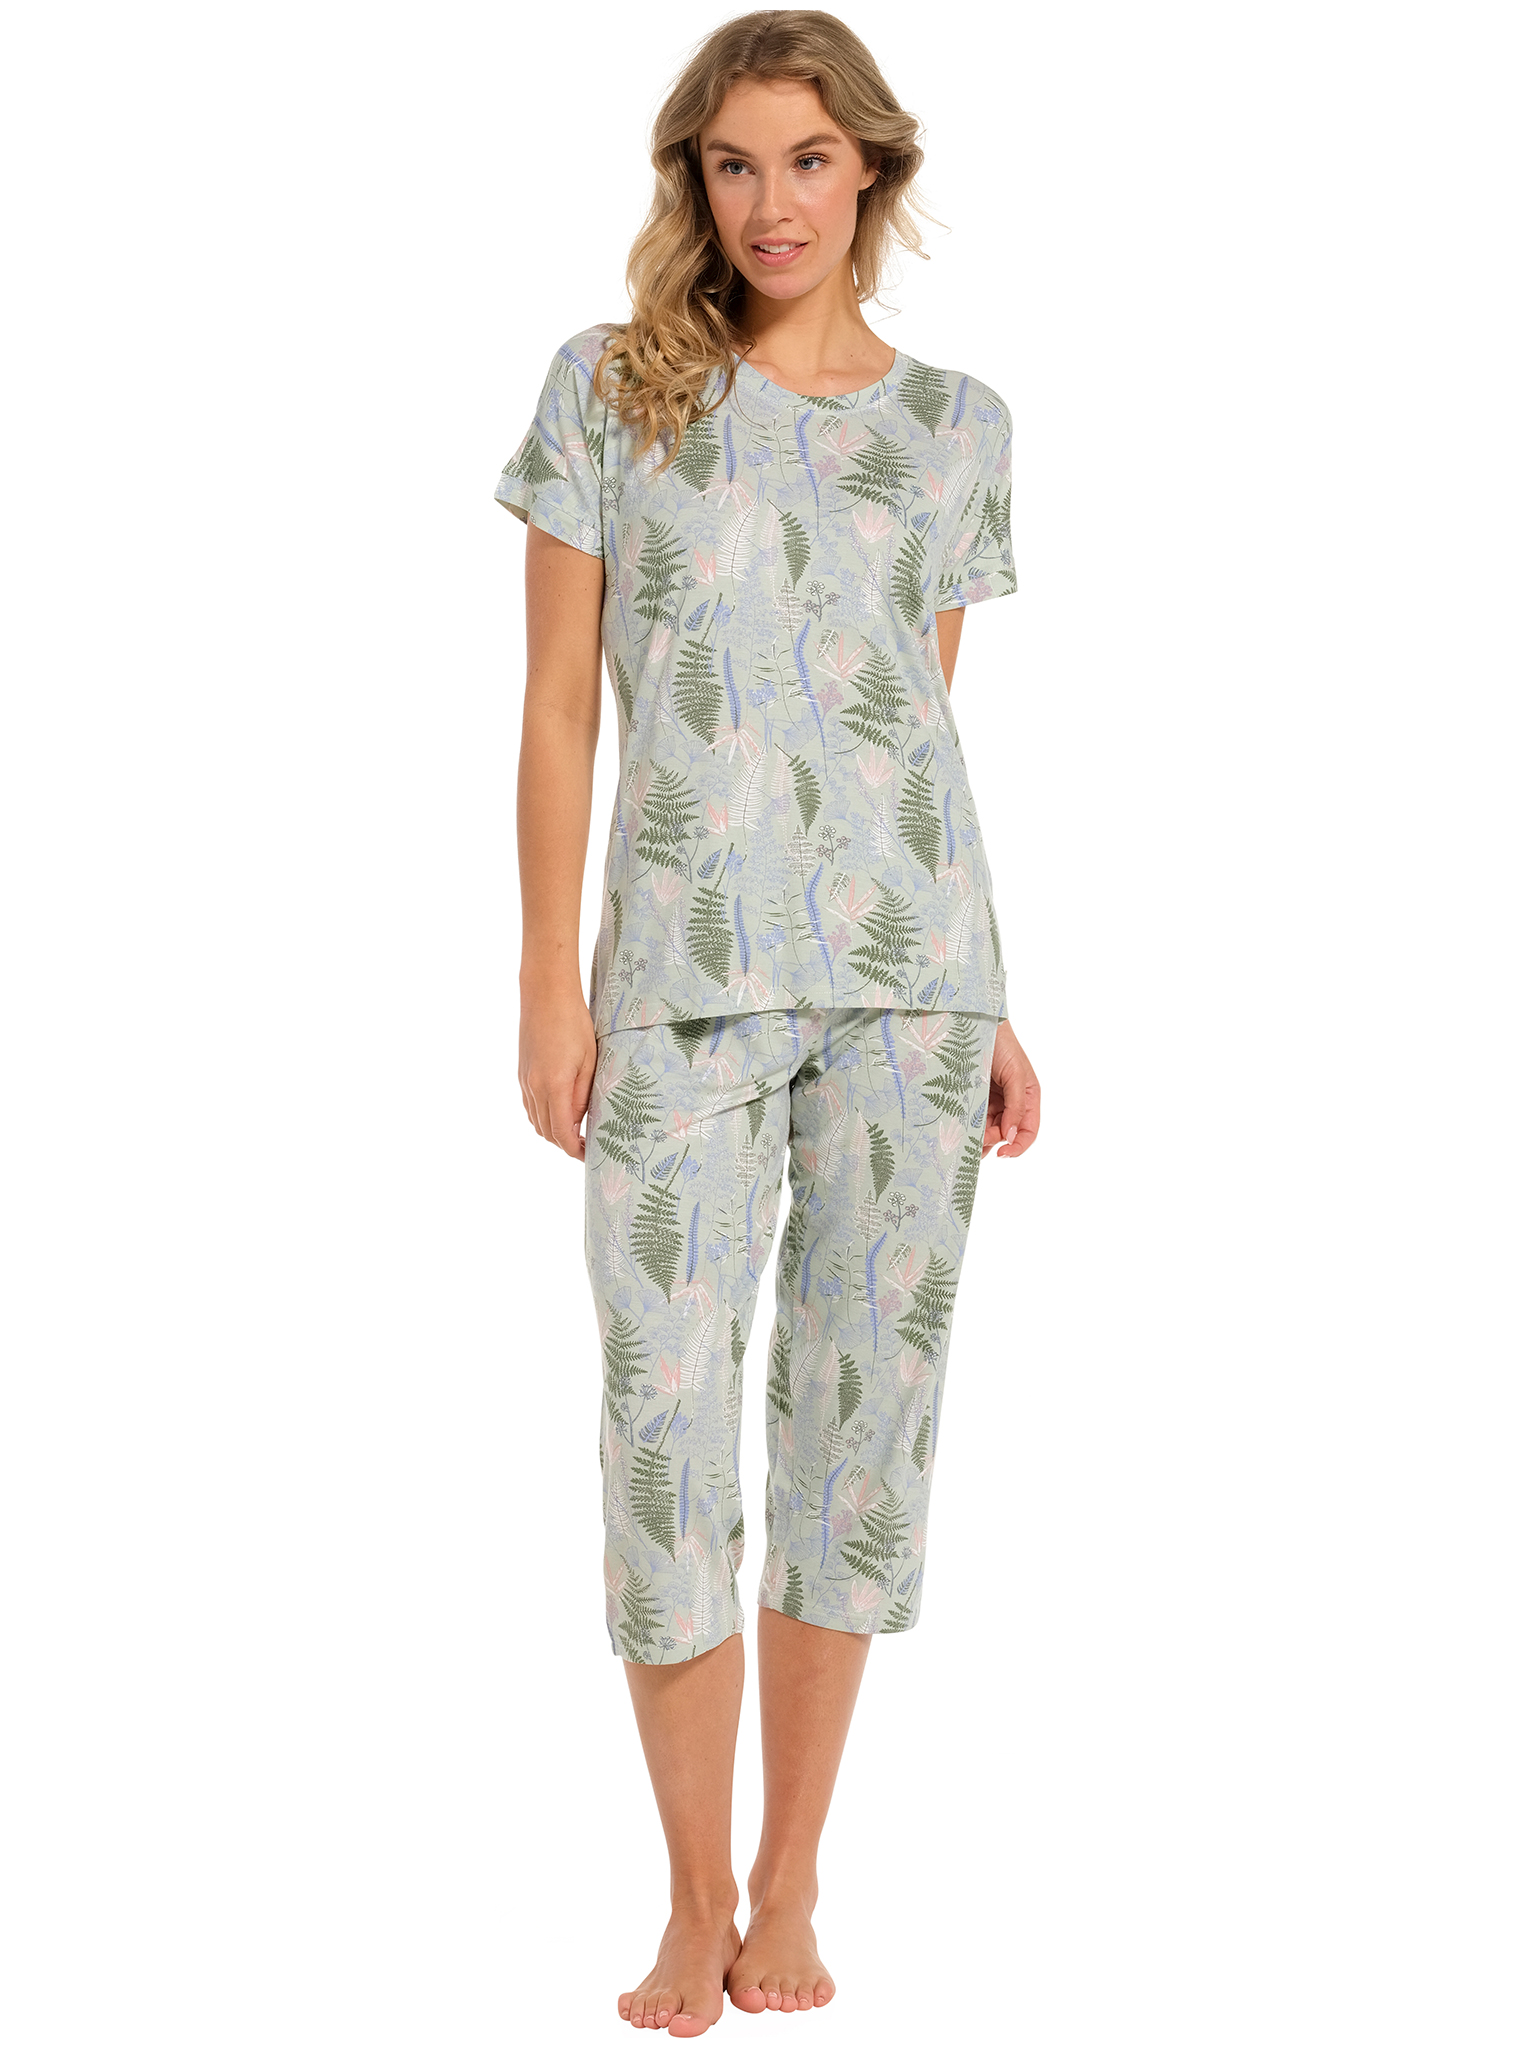 Pastunette - Green Dream - Dames Pyjamaset - Groen - Bamboe - Maat 40